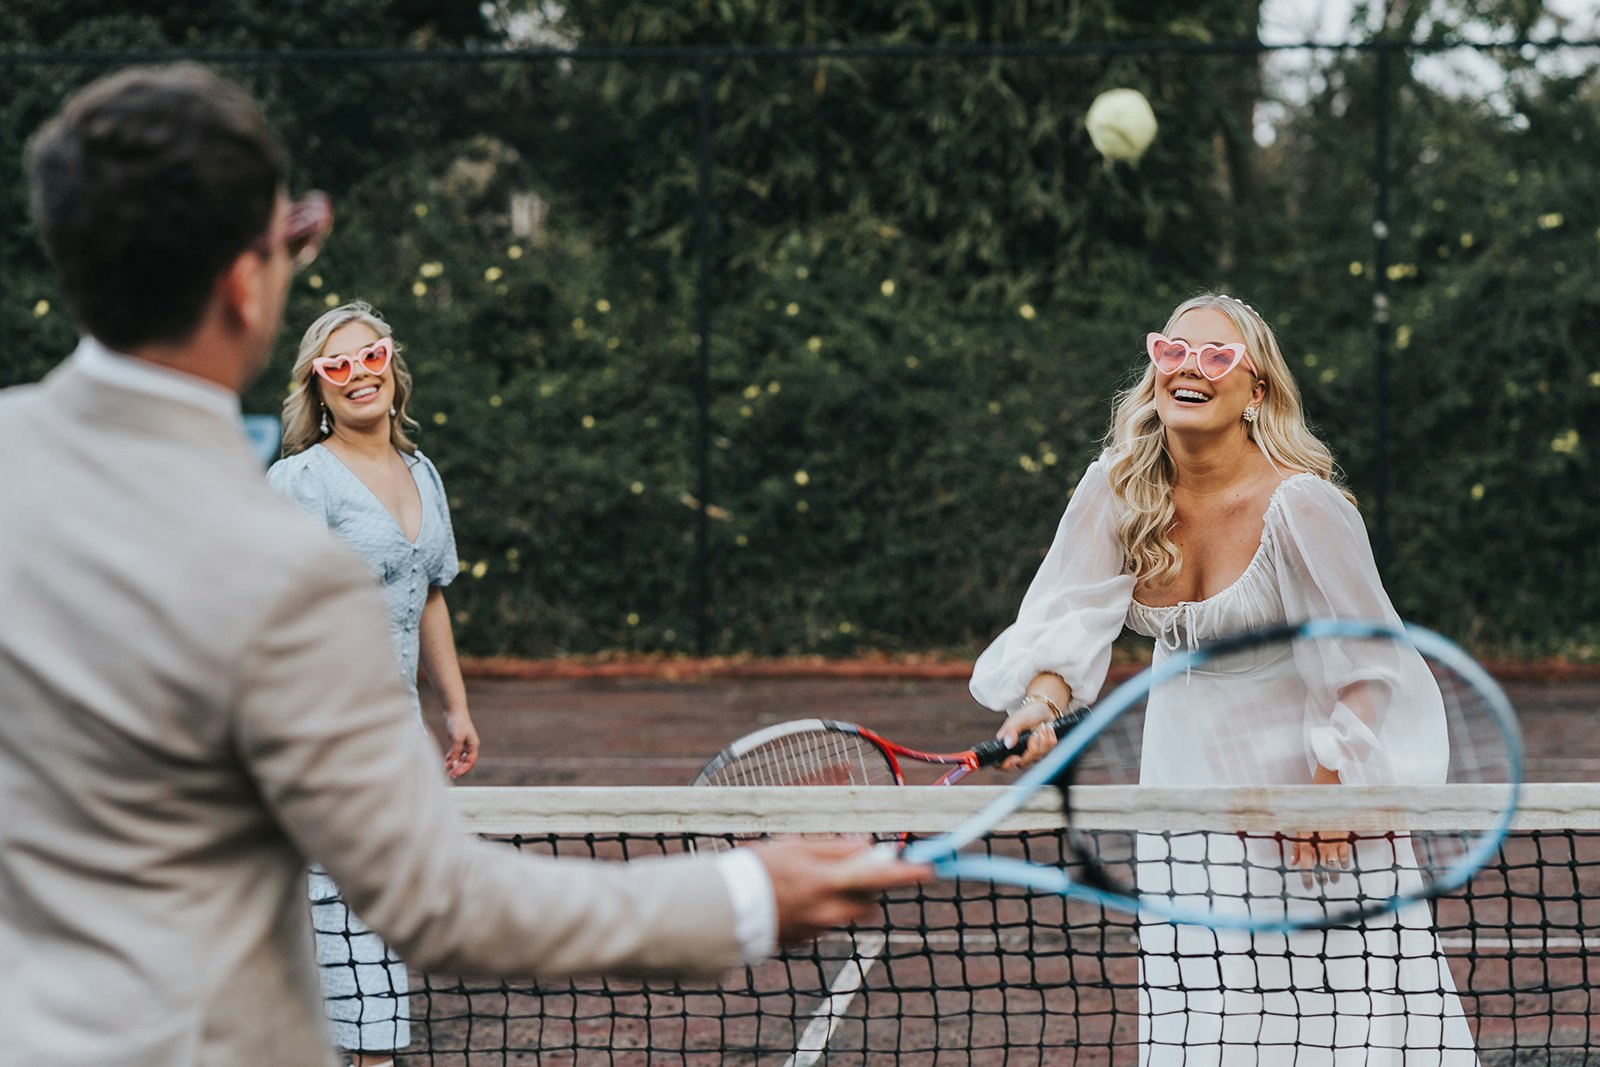 Bride playing tennis